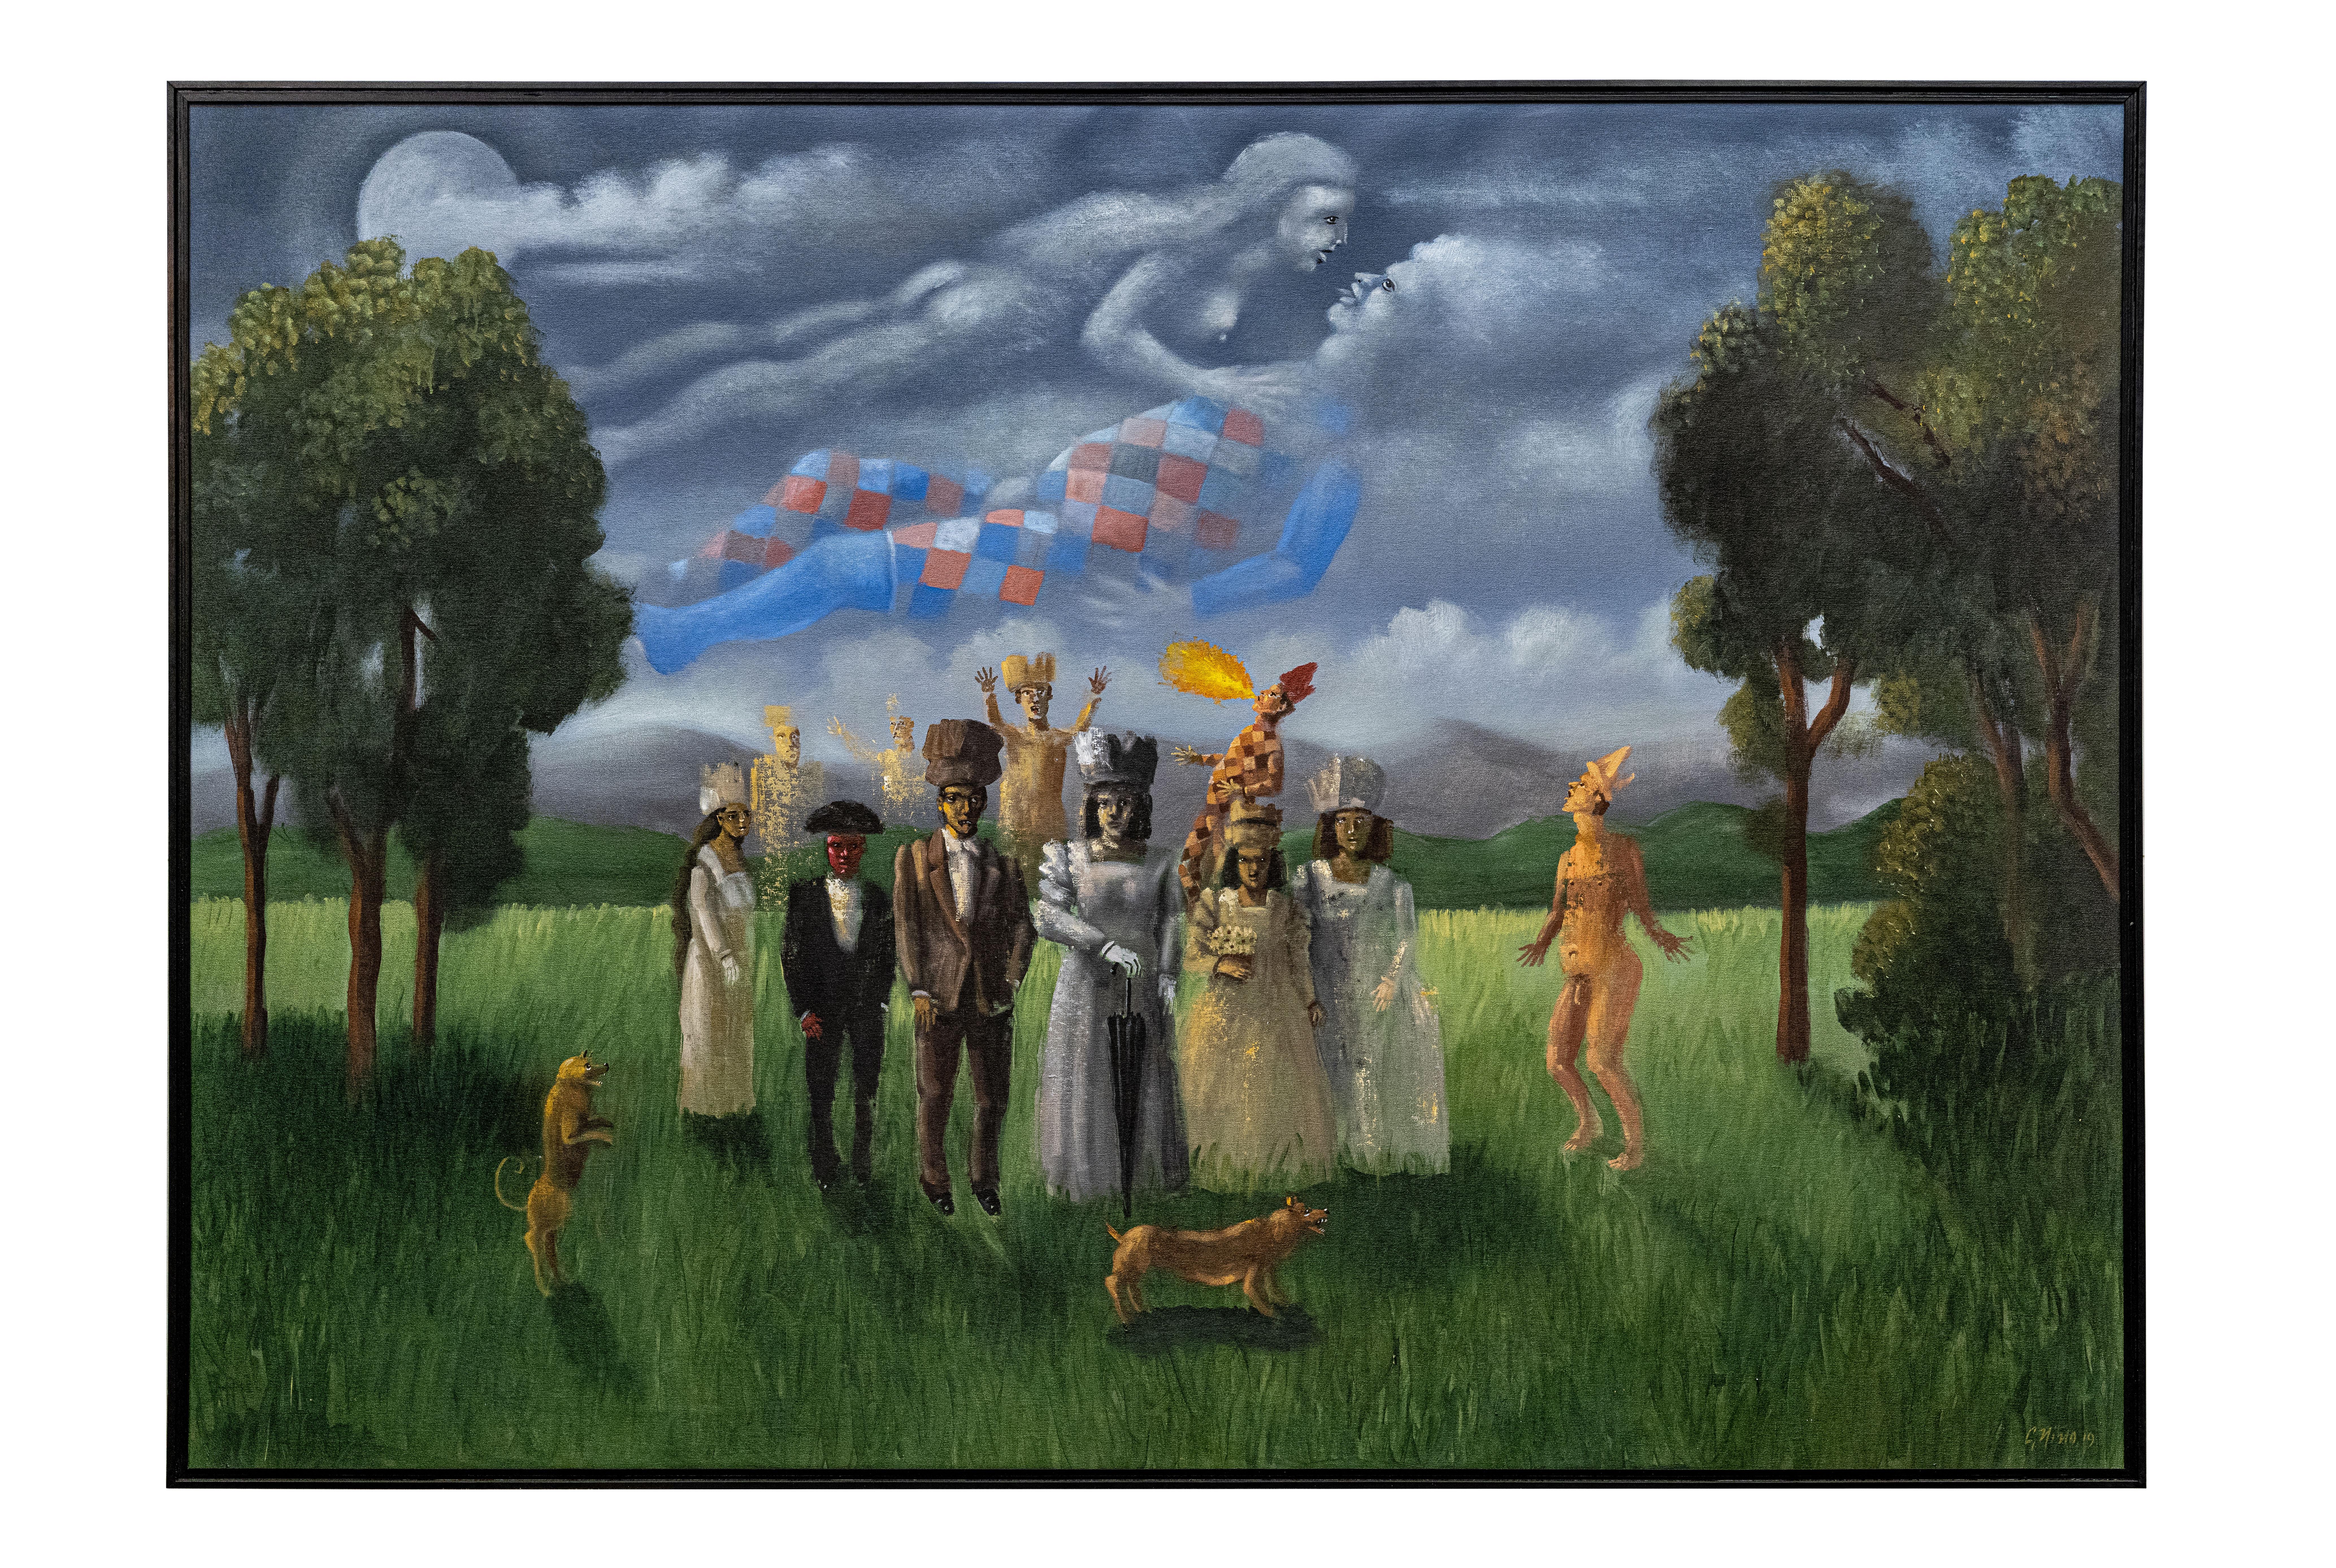 Carmelo Nio, Amantes con escena, 2019, 140 x 200 cm, 58,1 x 78,7 pouces. - Painting de Carmelo Niño